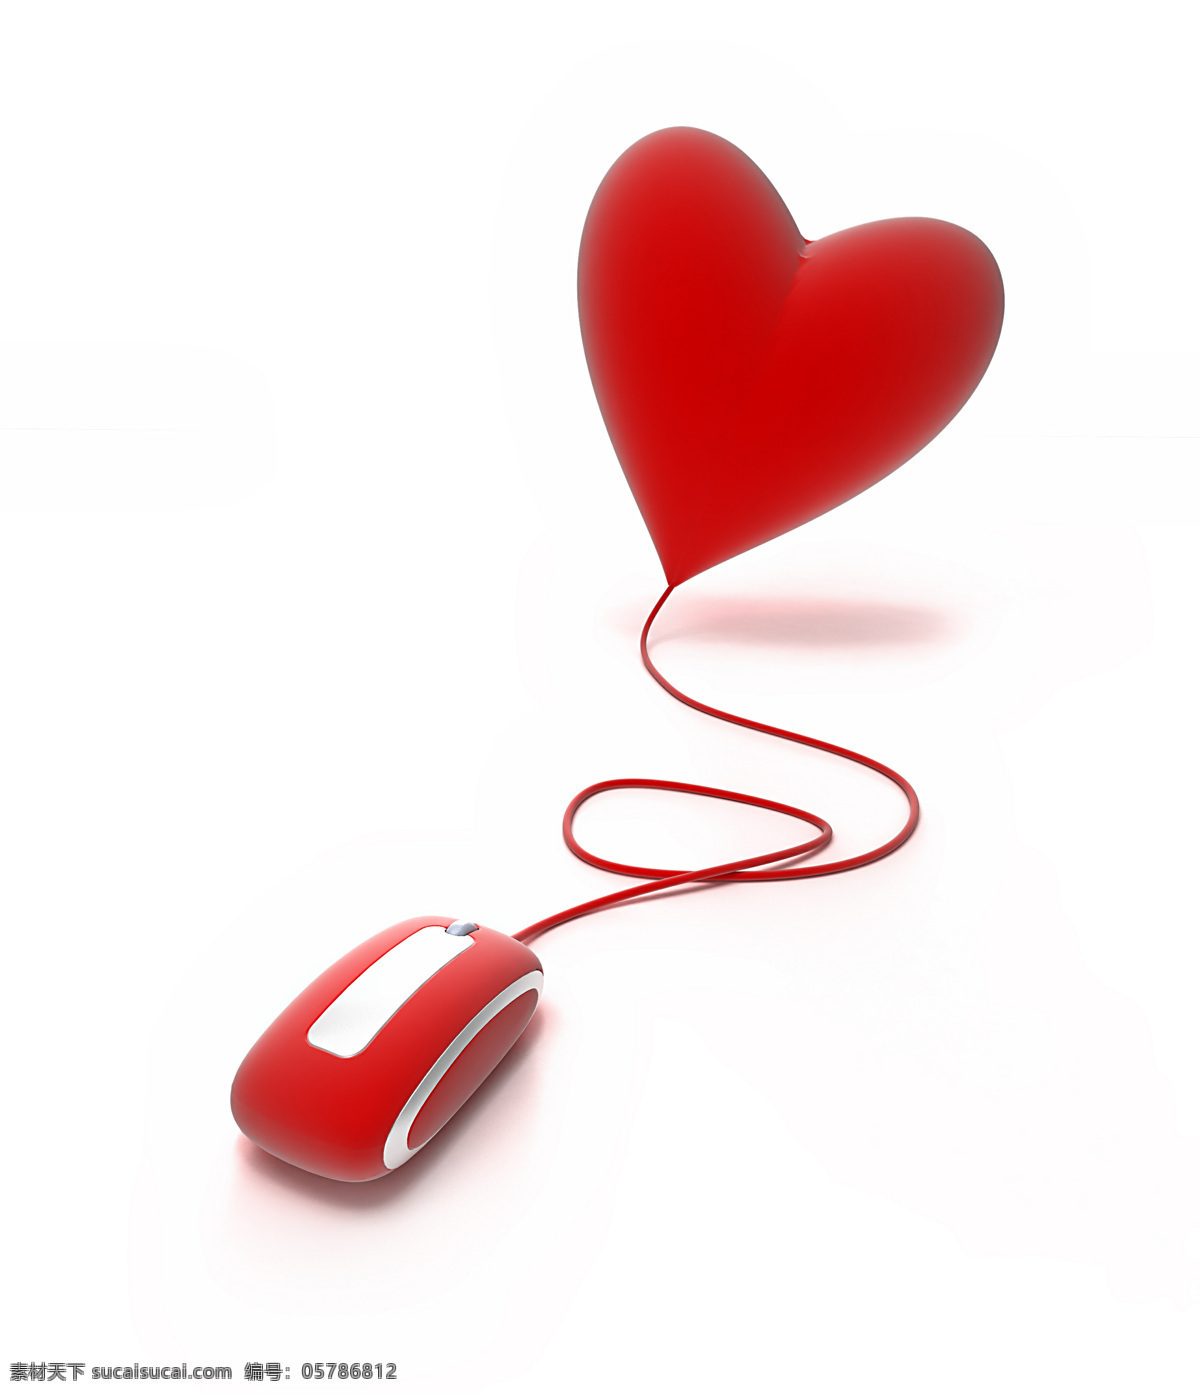 心形 鼠标 物品 樱桃形状 爱情 红心 情人节素材 3d作品 3d设计 其他类别 生活百科